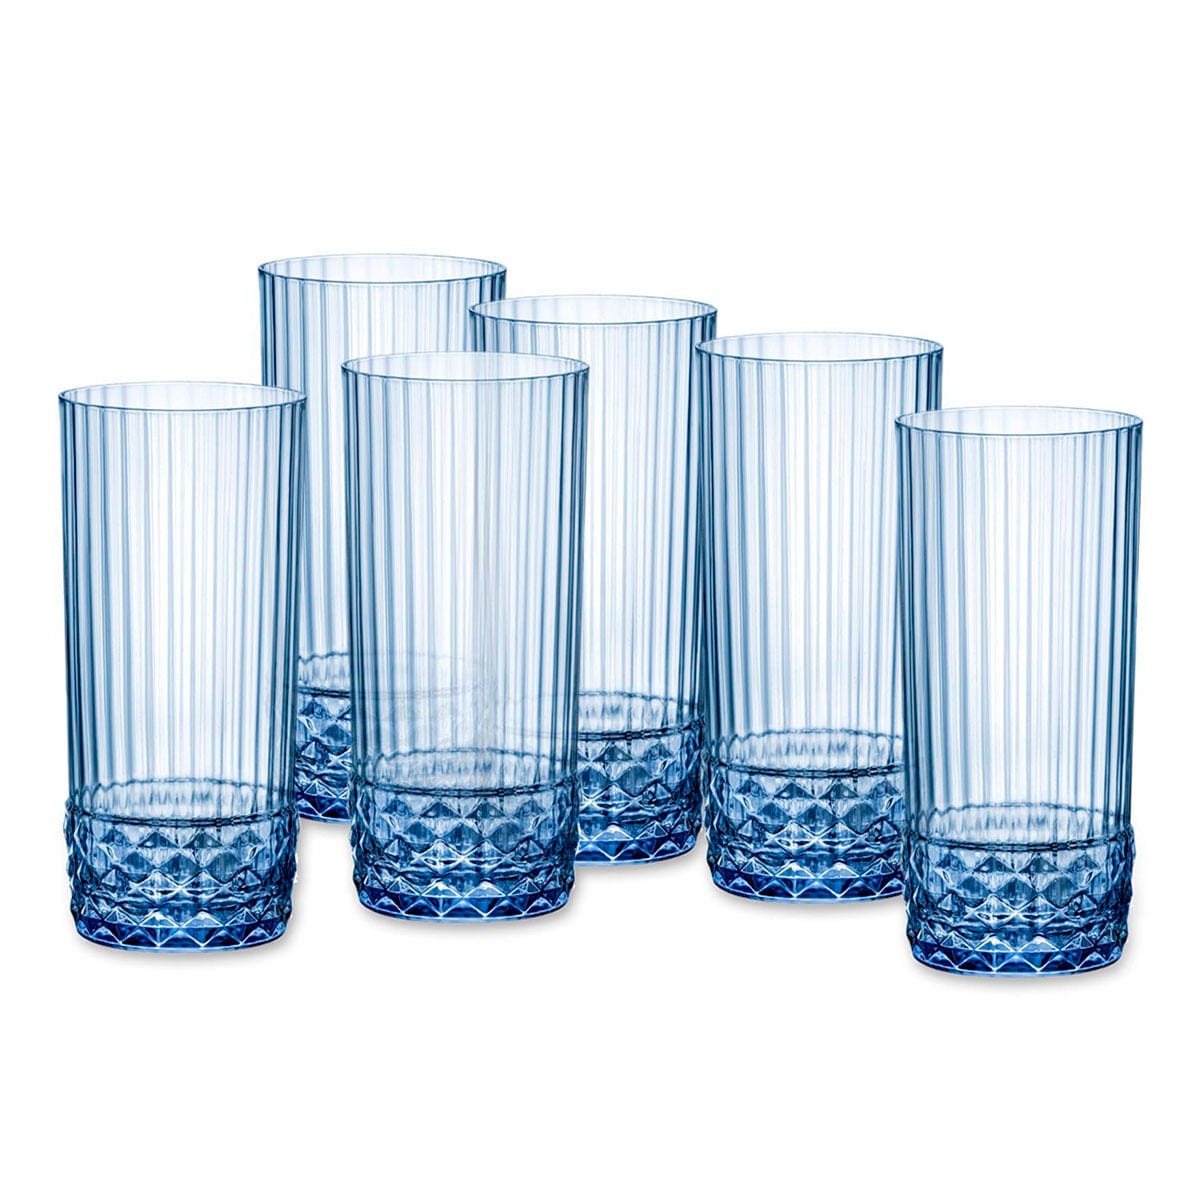 Set de Vasos Bormioli Rocco America'20s Azul 6 Unidades Vidrio (490 ml)  8004360093926 S2706183 Bormioli Rocco